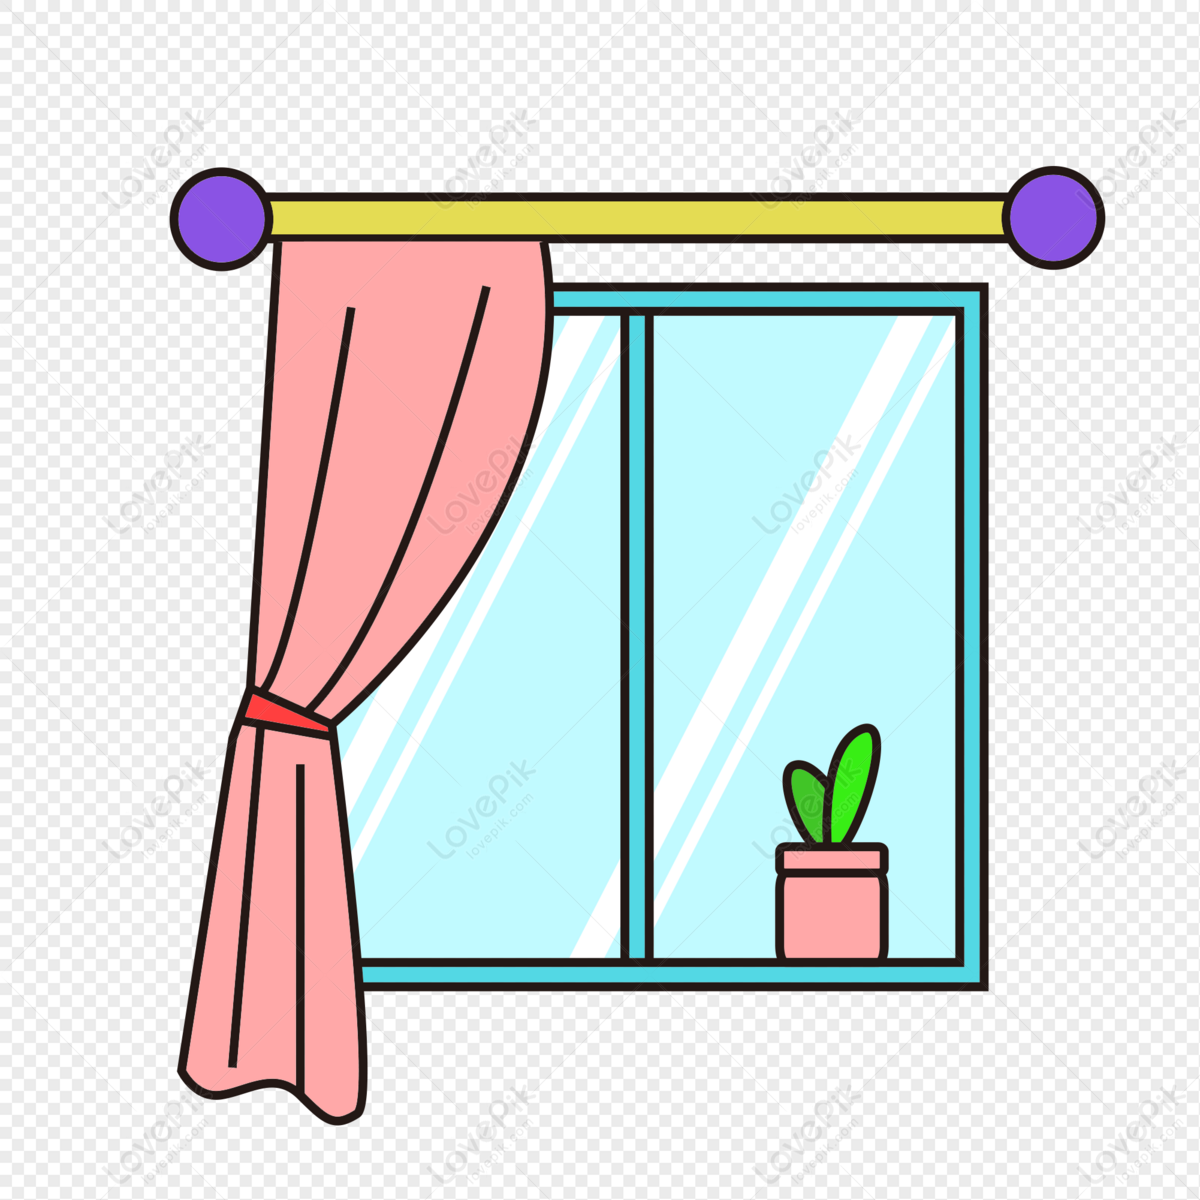 Cách vẽ cửa sổ đơn giản đã trở thành một chủ đề được nhiều người quan tâm. Không chỉ giúp cho việc thiết kế nội thất trở nên đơn giản hơn, cách vẽ cửa sổ còn là một cách để thể hiện tài năng và sở thích của mỗi người. Hãy cùng xem hình ảnh liên quan để tìm hiểu thêm về cách vẽ cửa sổ đơn giản!